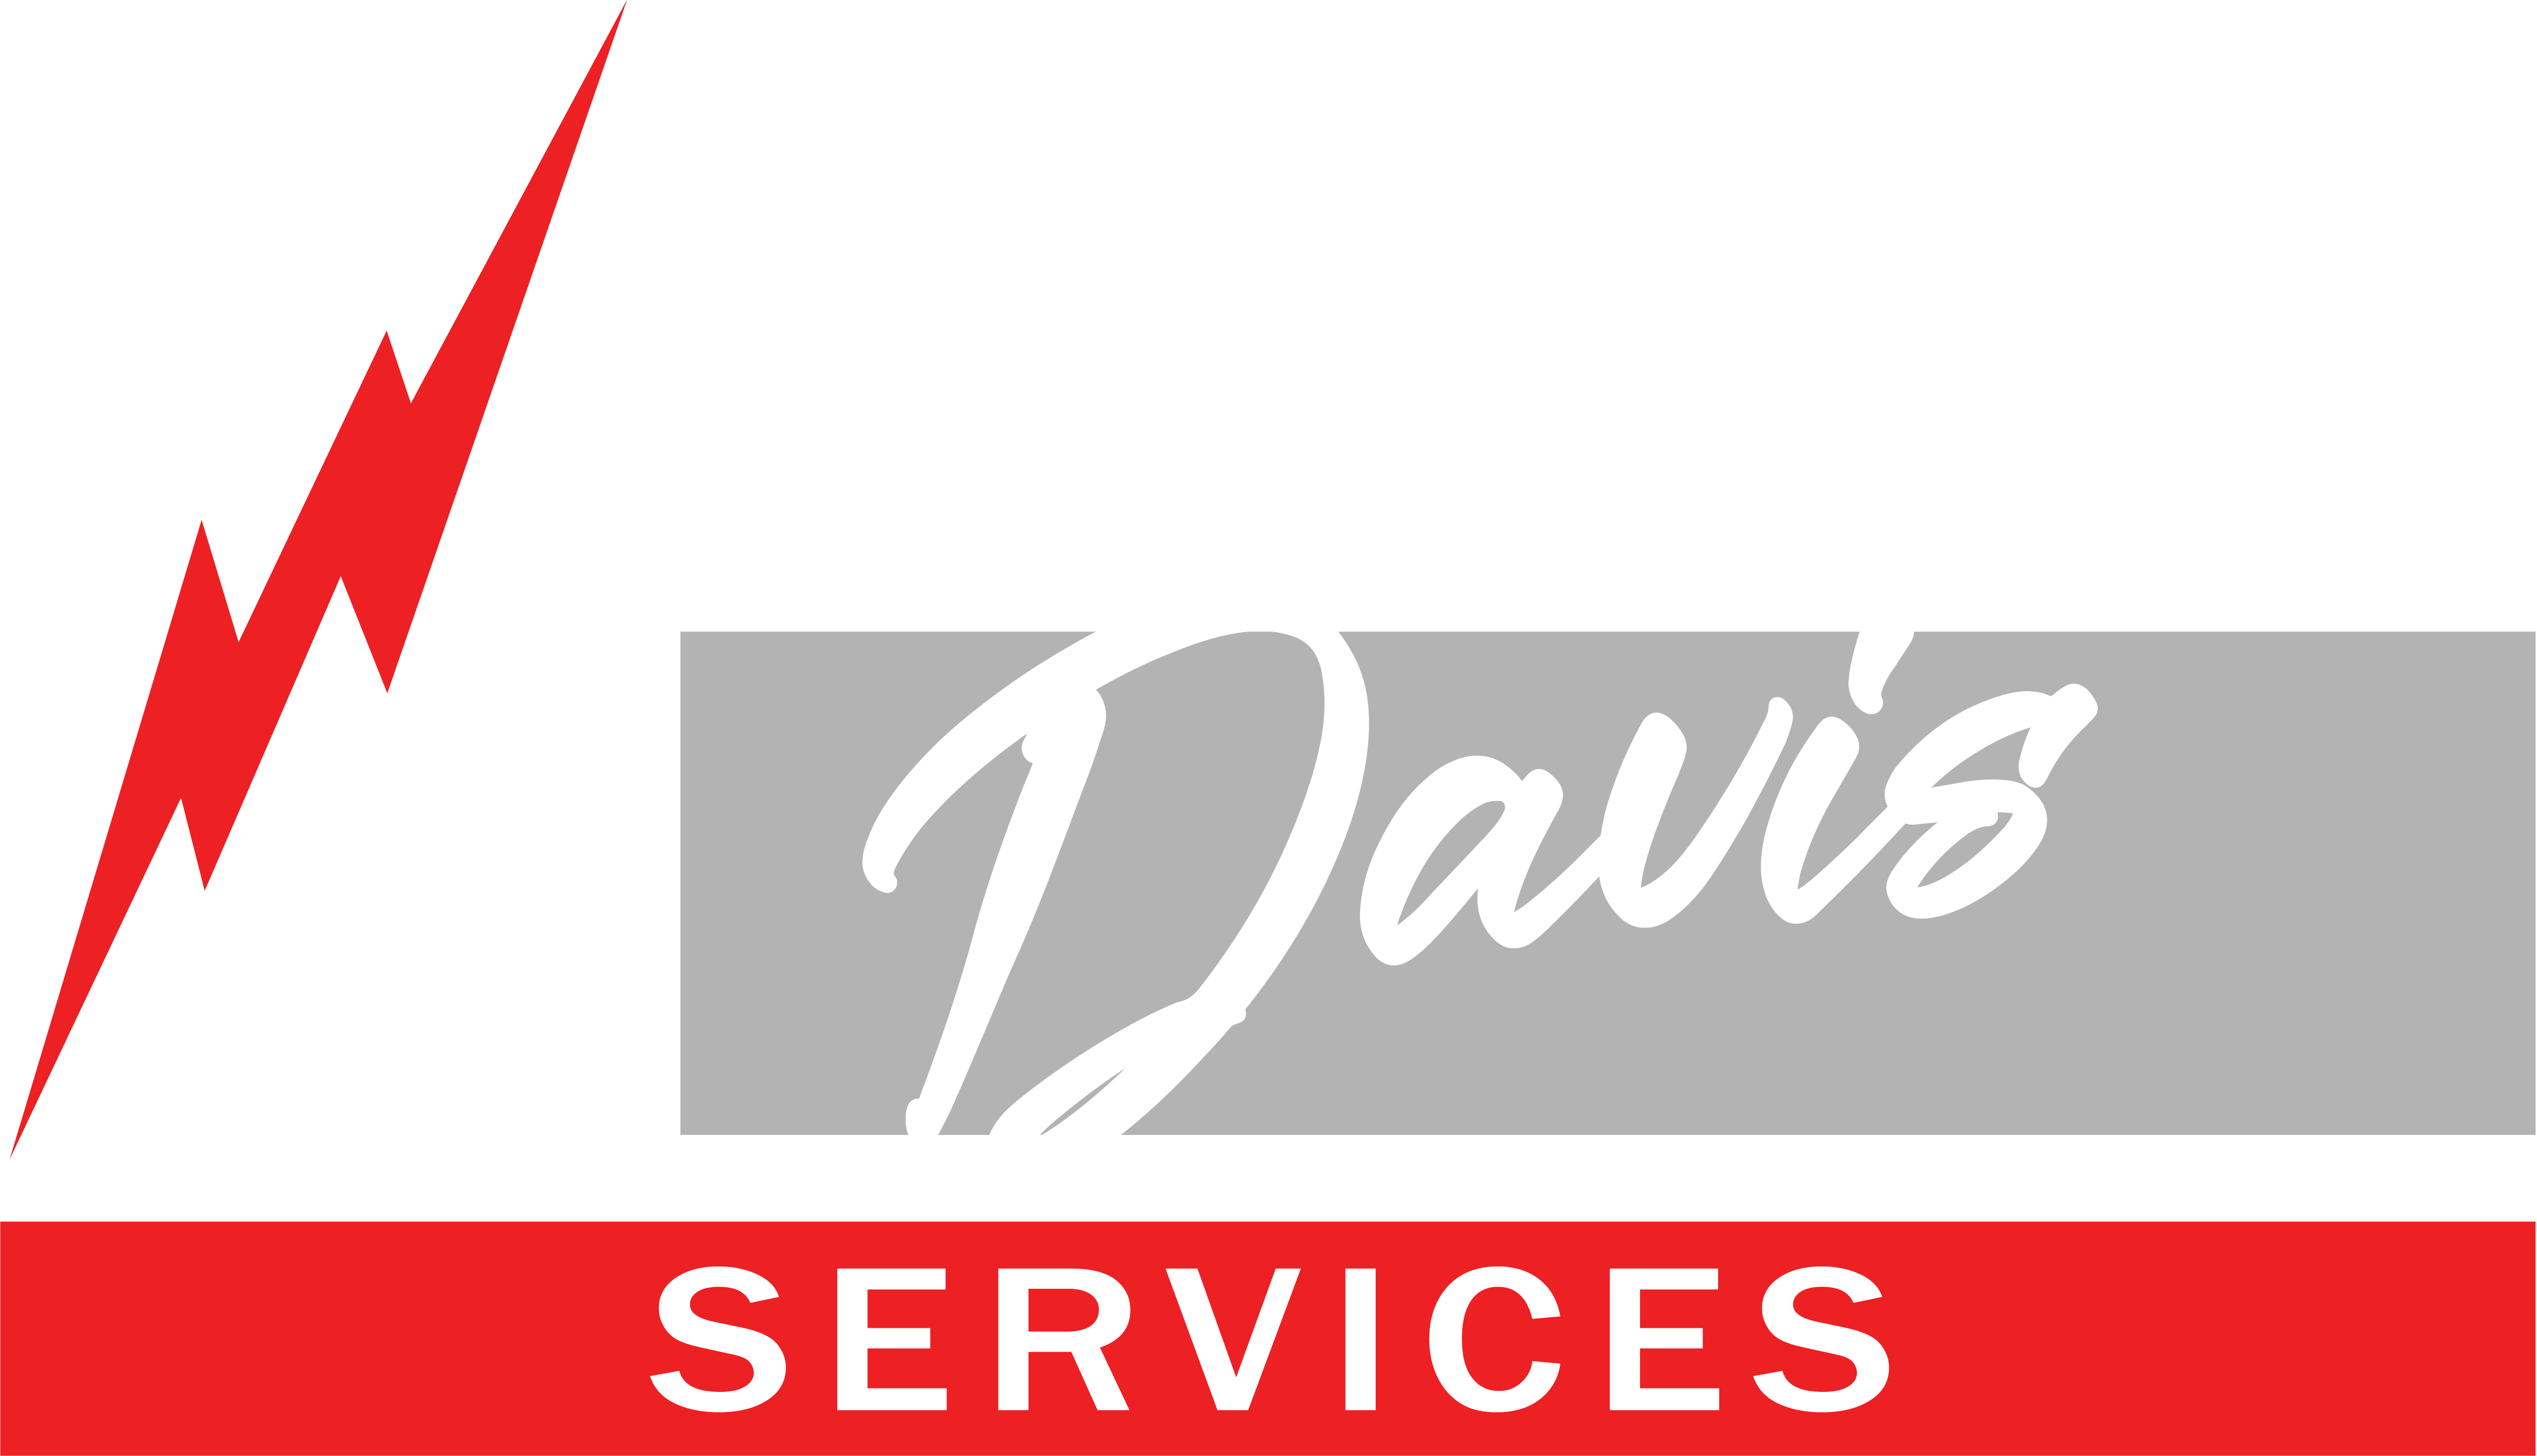 Pemberton Davis Services